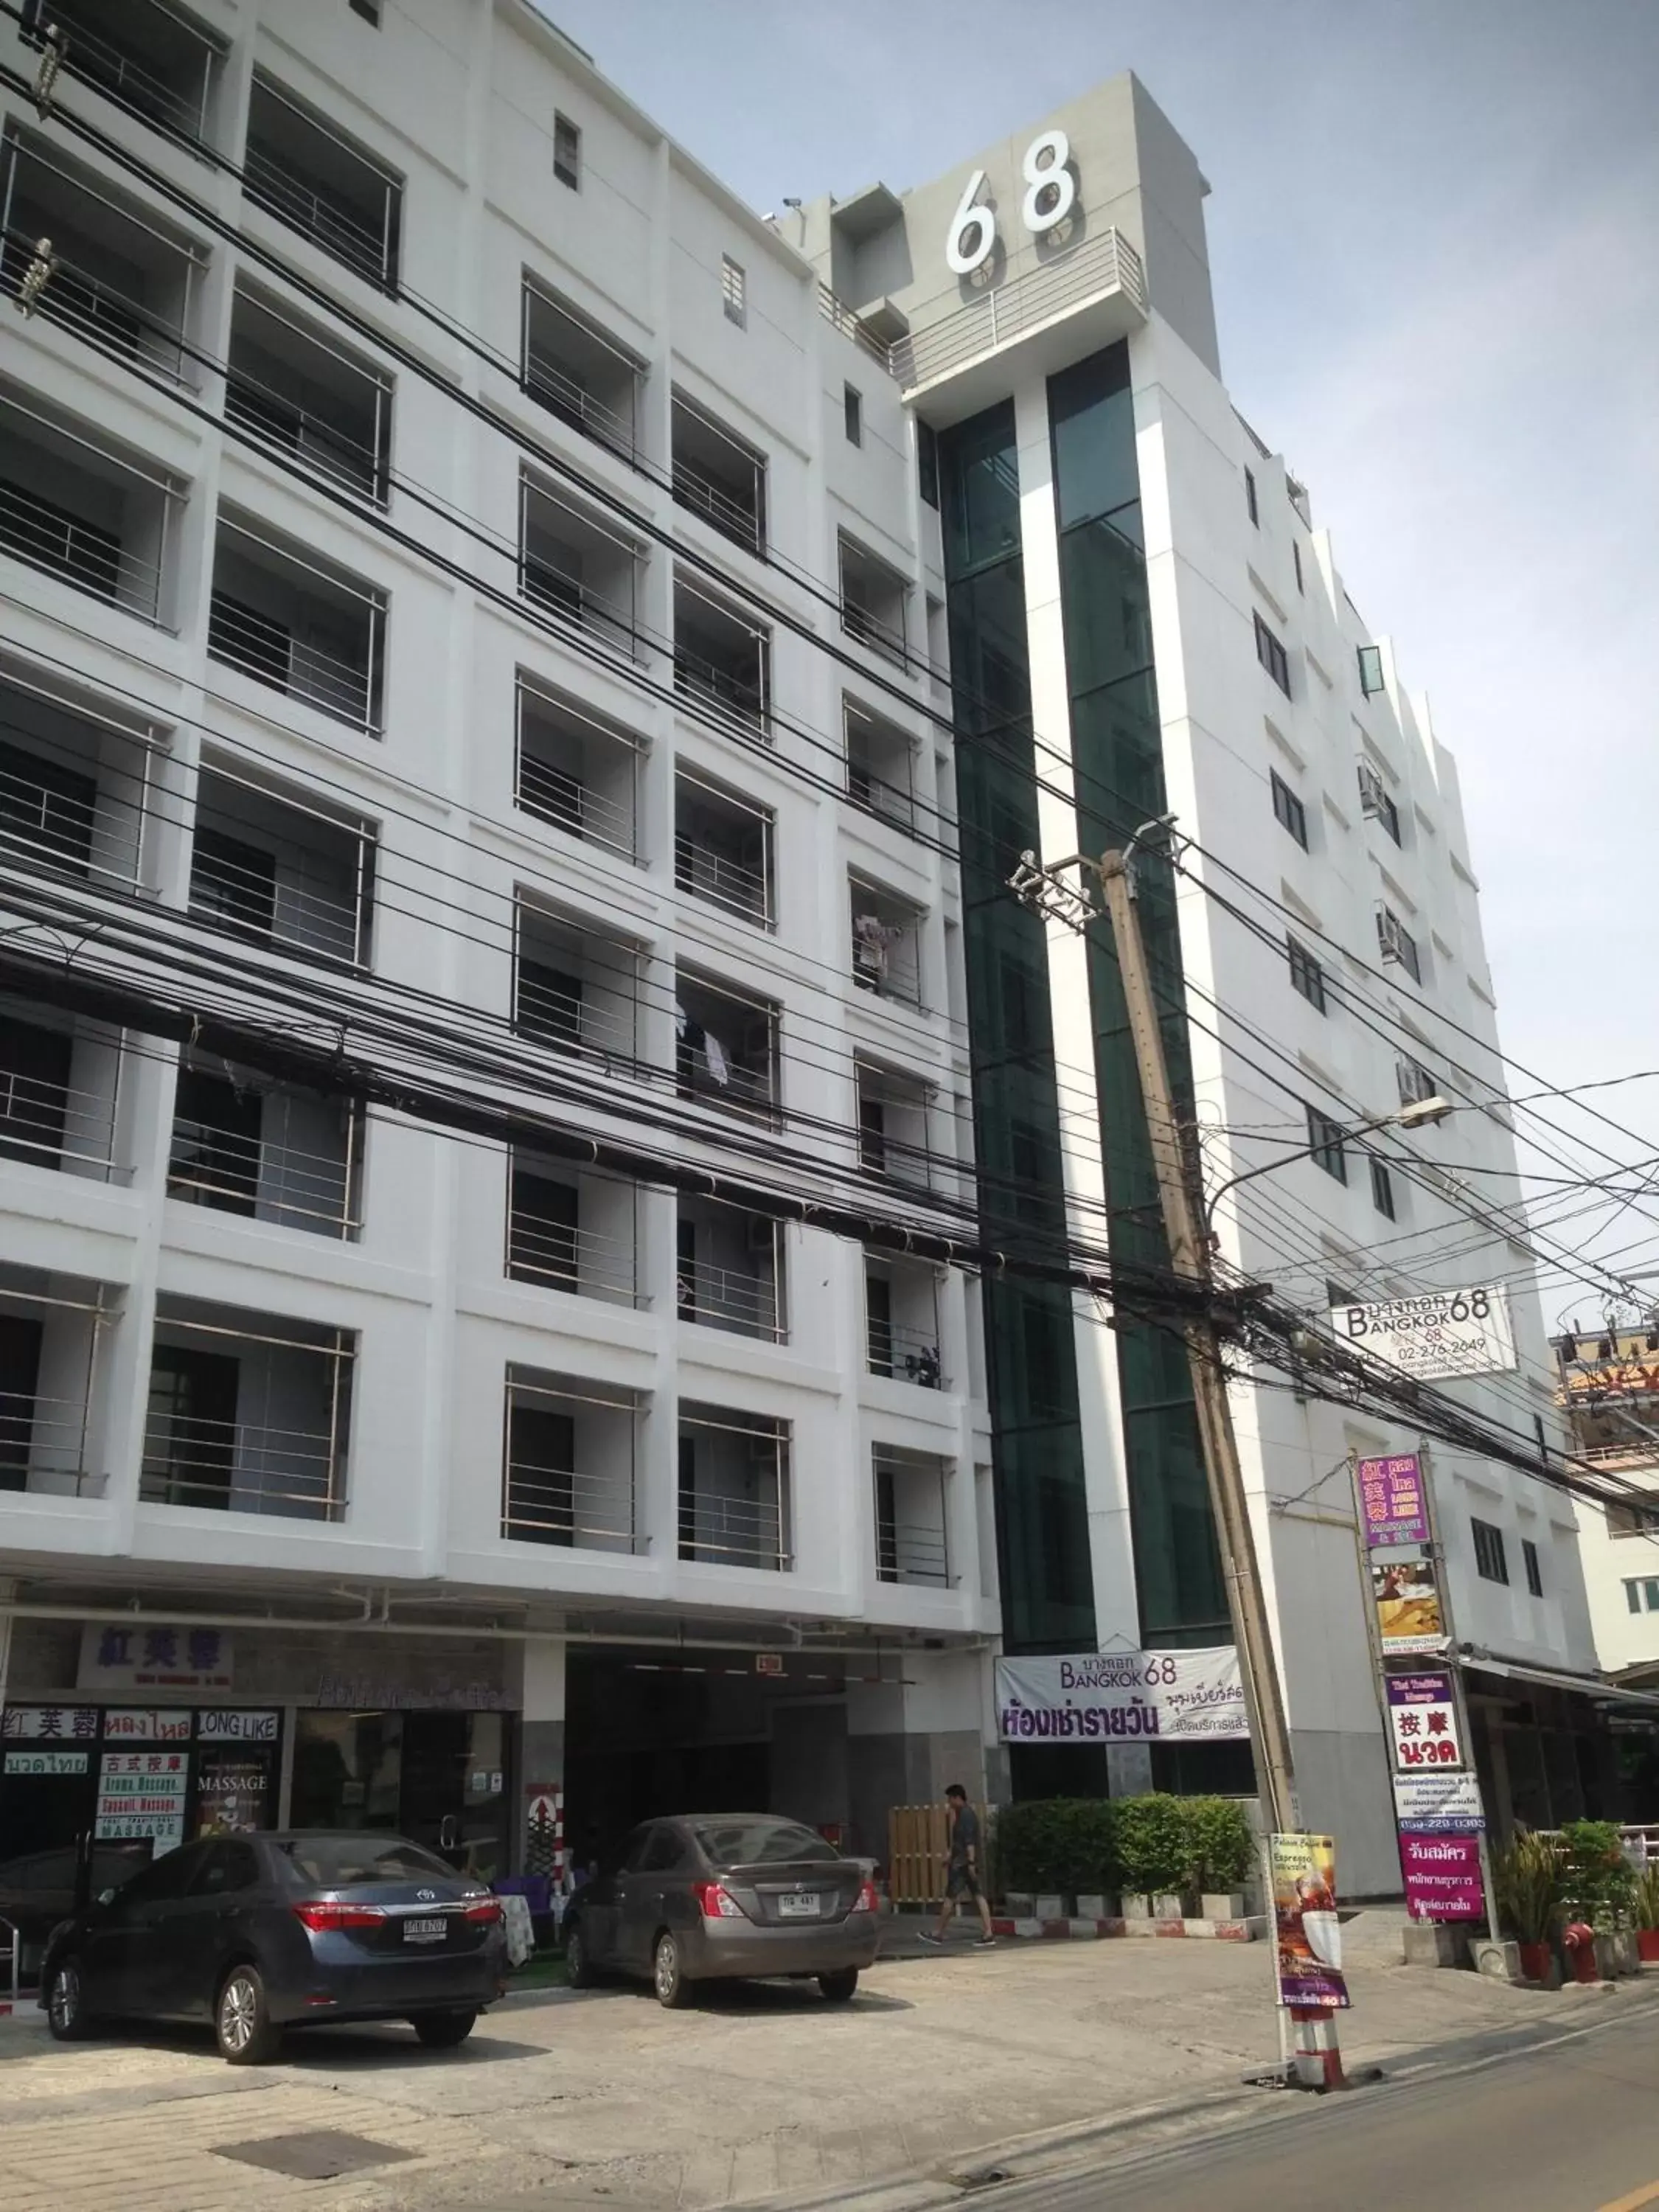 Facade/entrance, Property Building in Bangkok 68